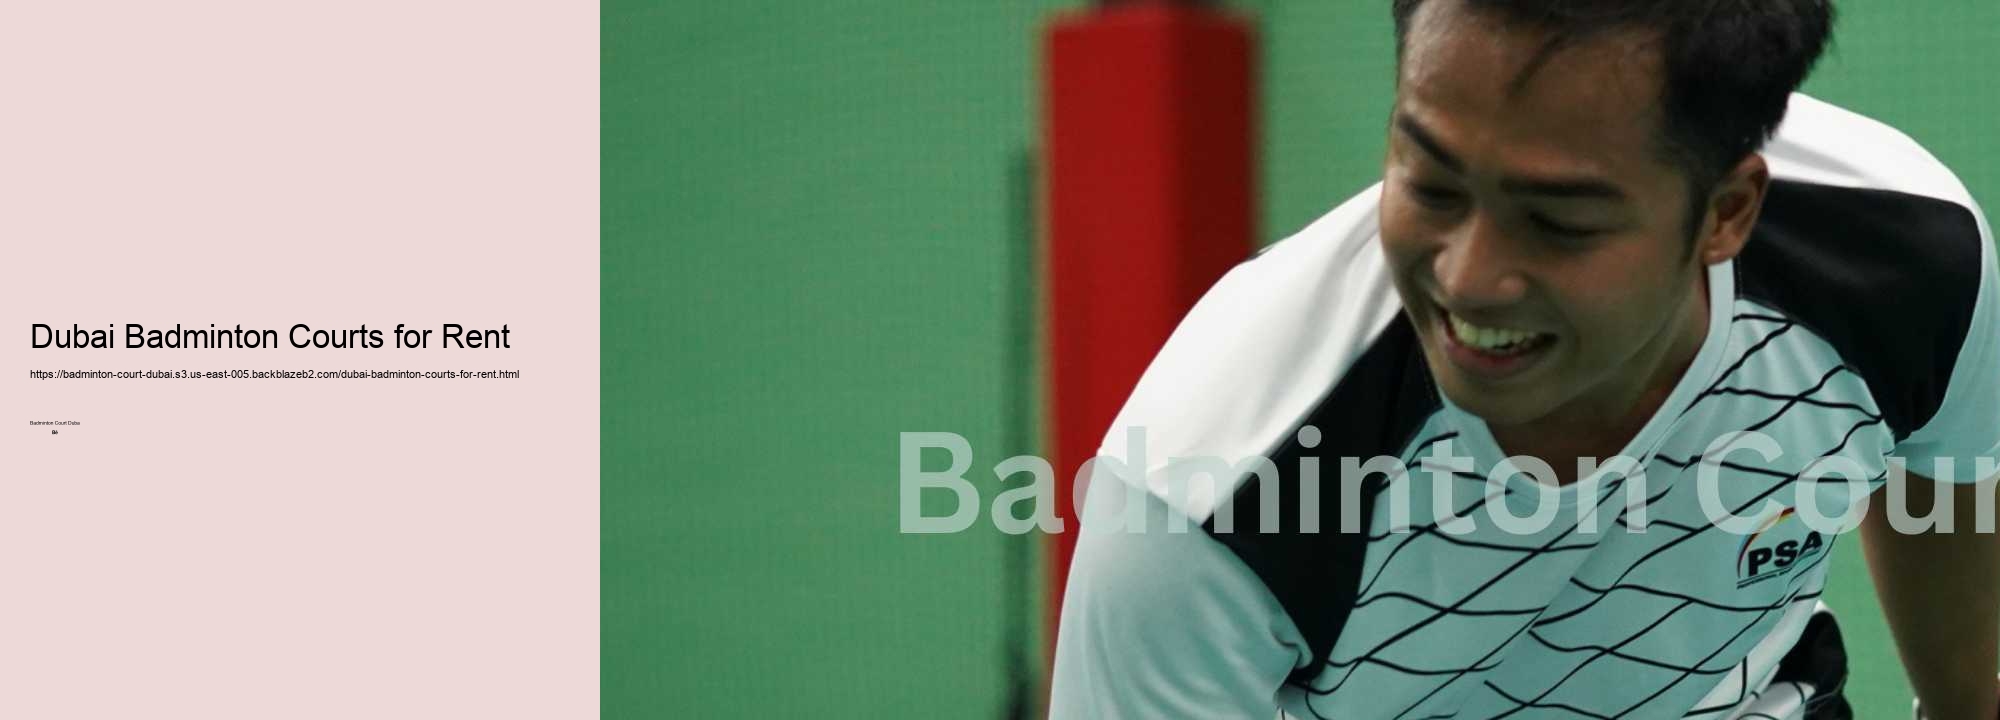 Dubai Badminton Courts for Rent